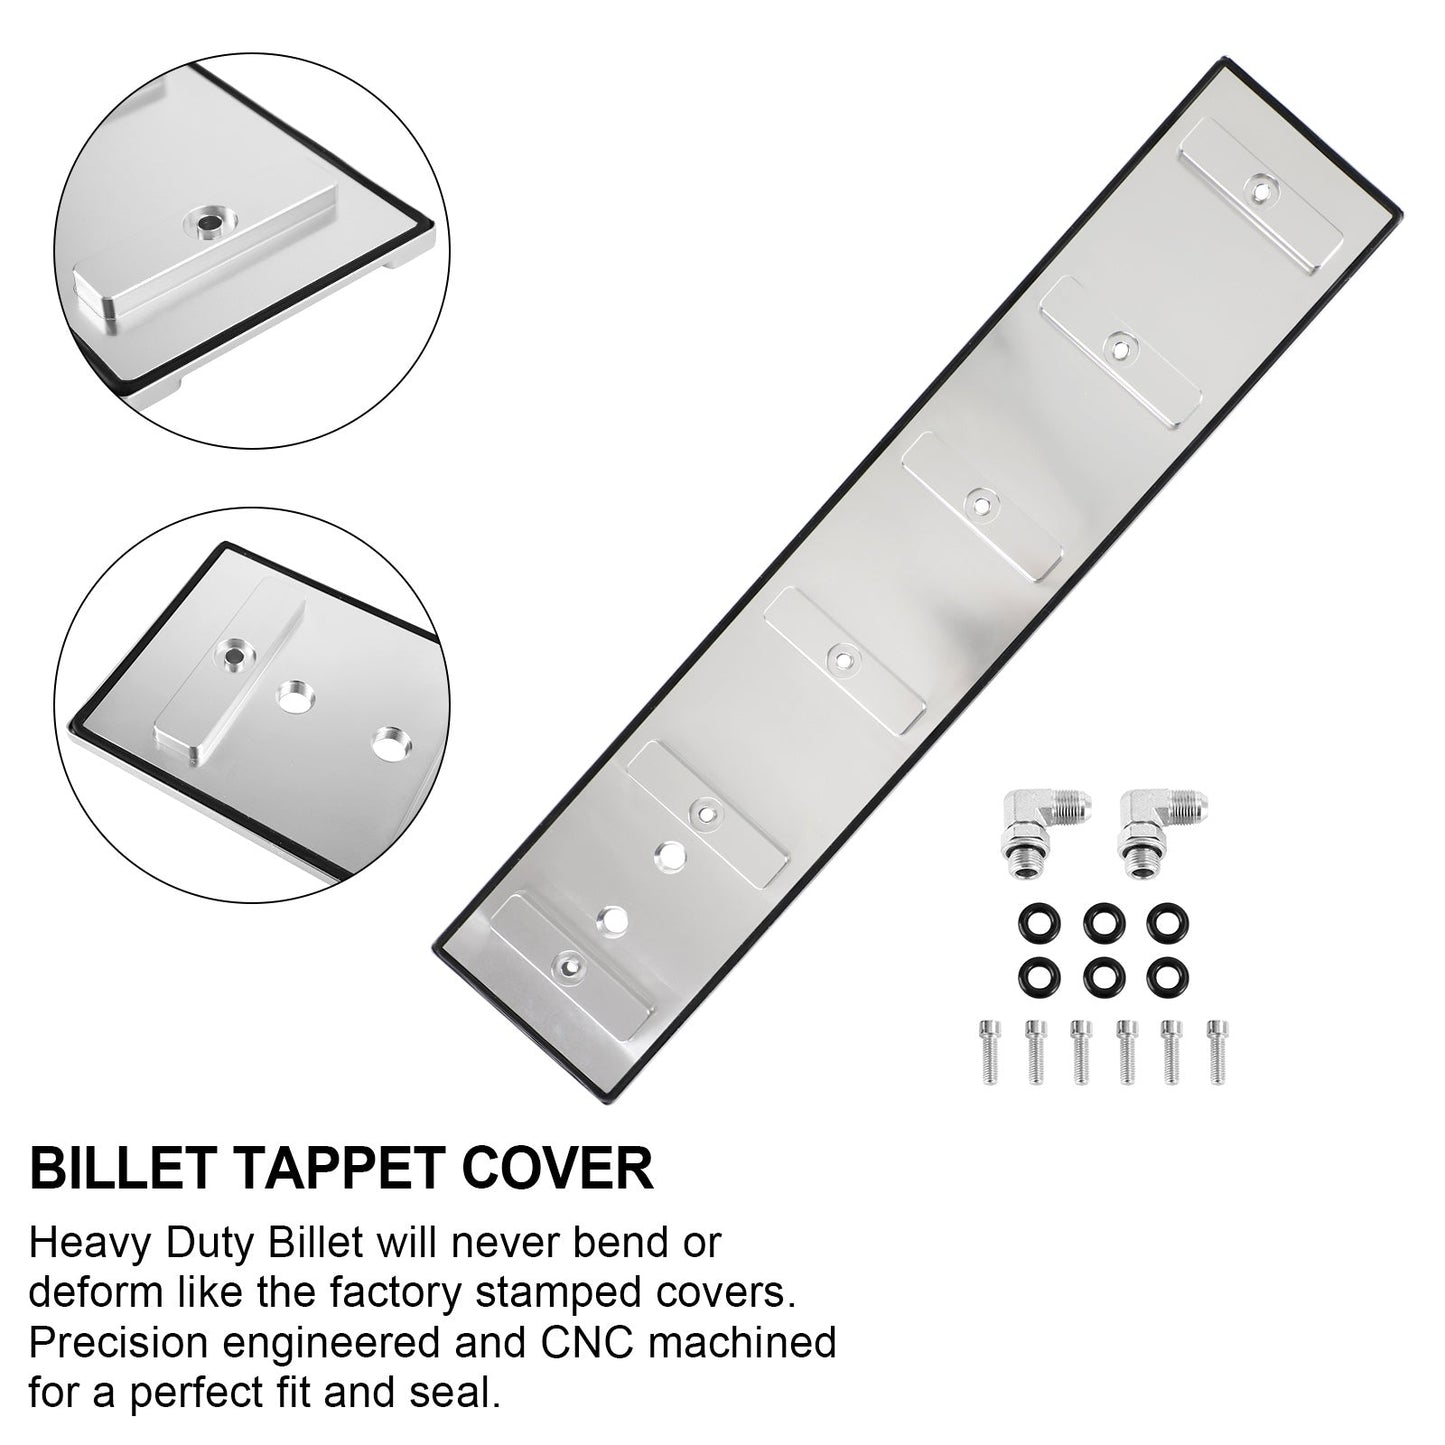 Billet Tappet Cover KIT For Cummins 5.9L 12v 24v 1989 1990-1999 2000 2001 2002